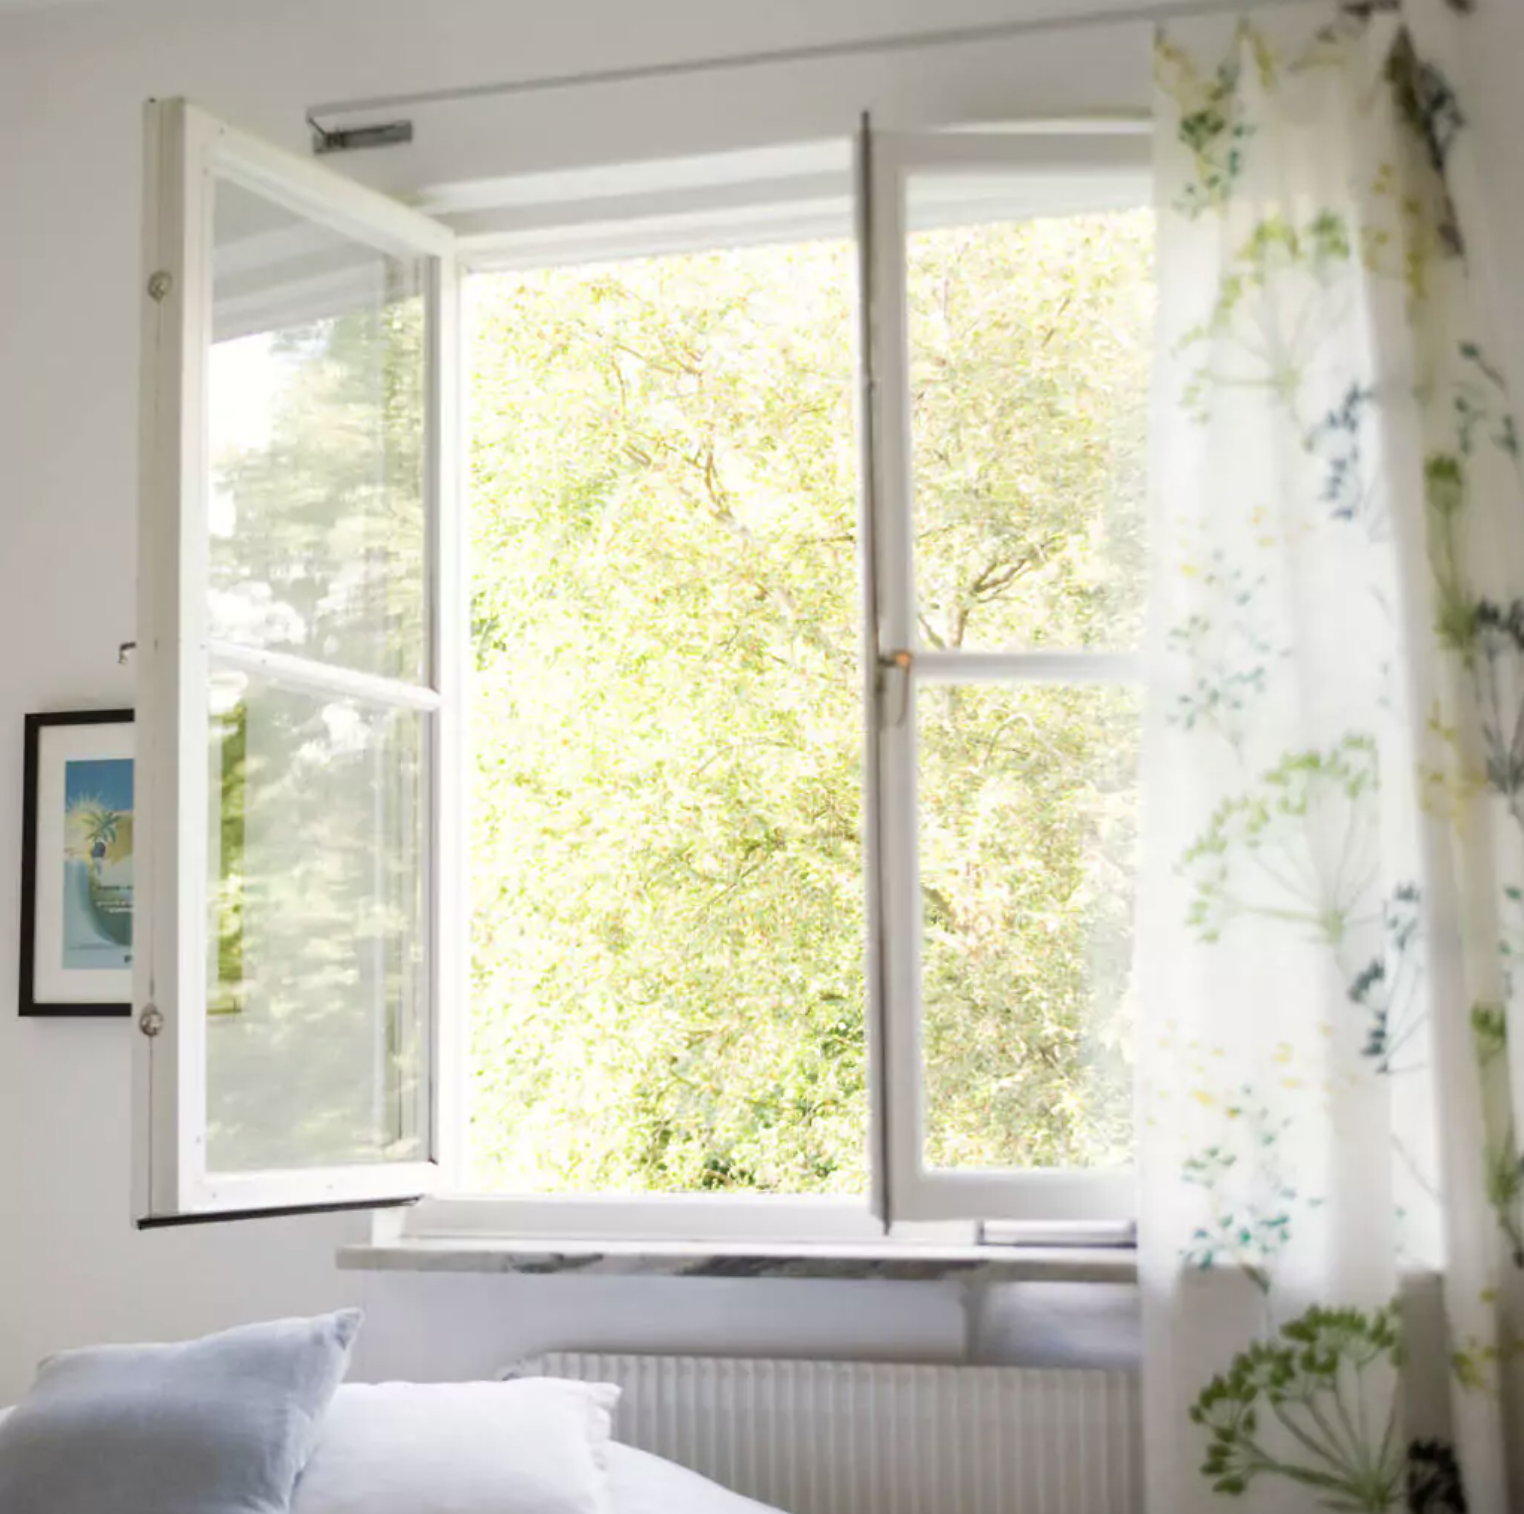 Влажность воздуха в квартире подручными способами - проветривание окнами